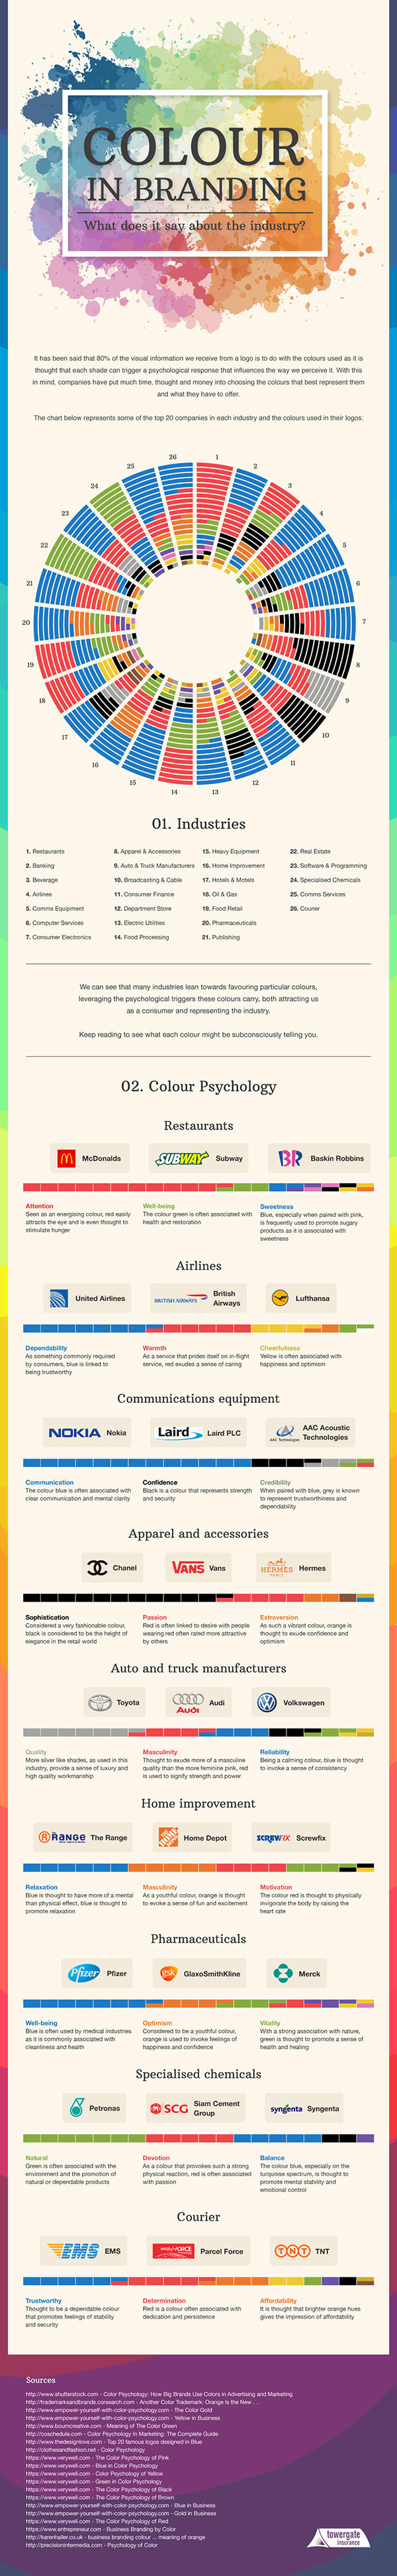 El color en el Branding y lo que dice sobre la industria